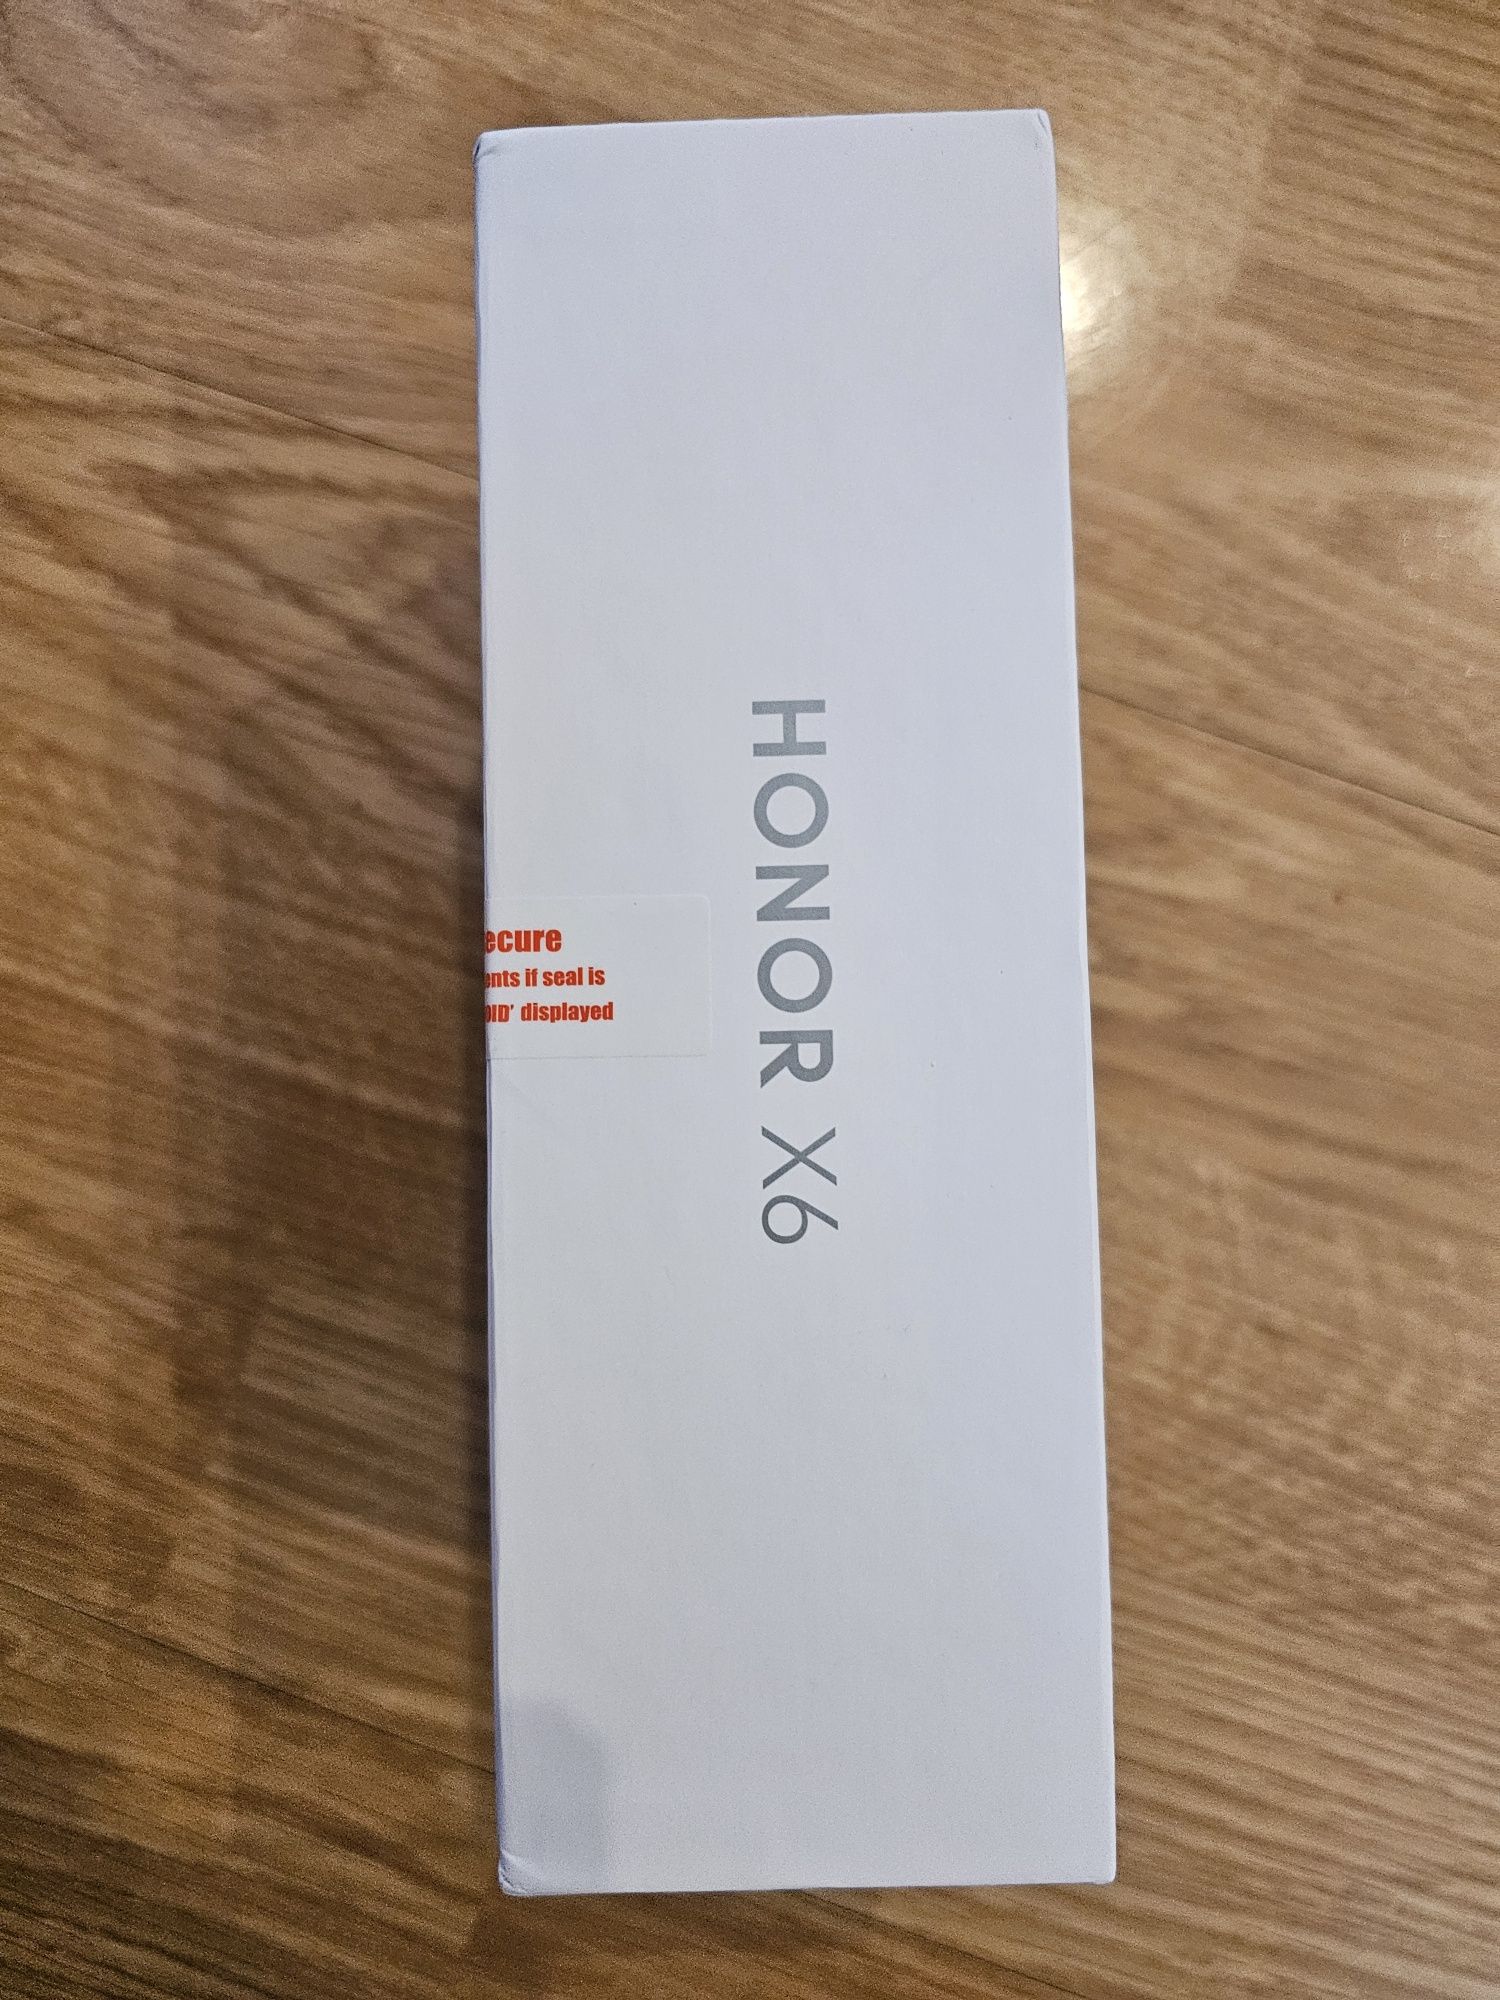 Telefon Honor X6 sigilat